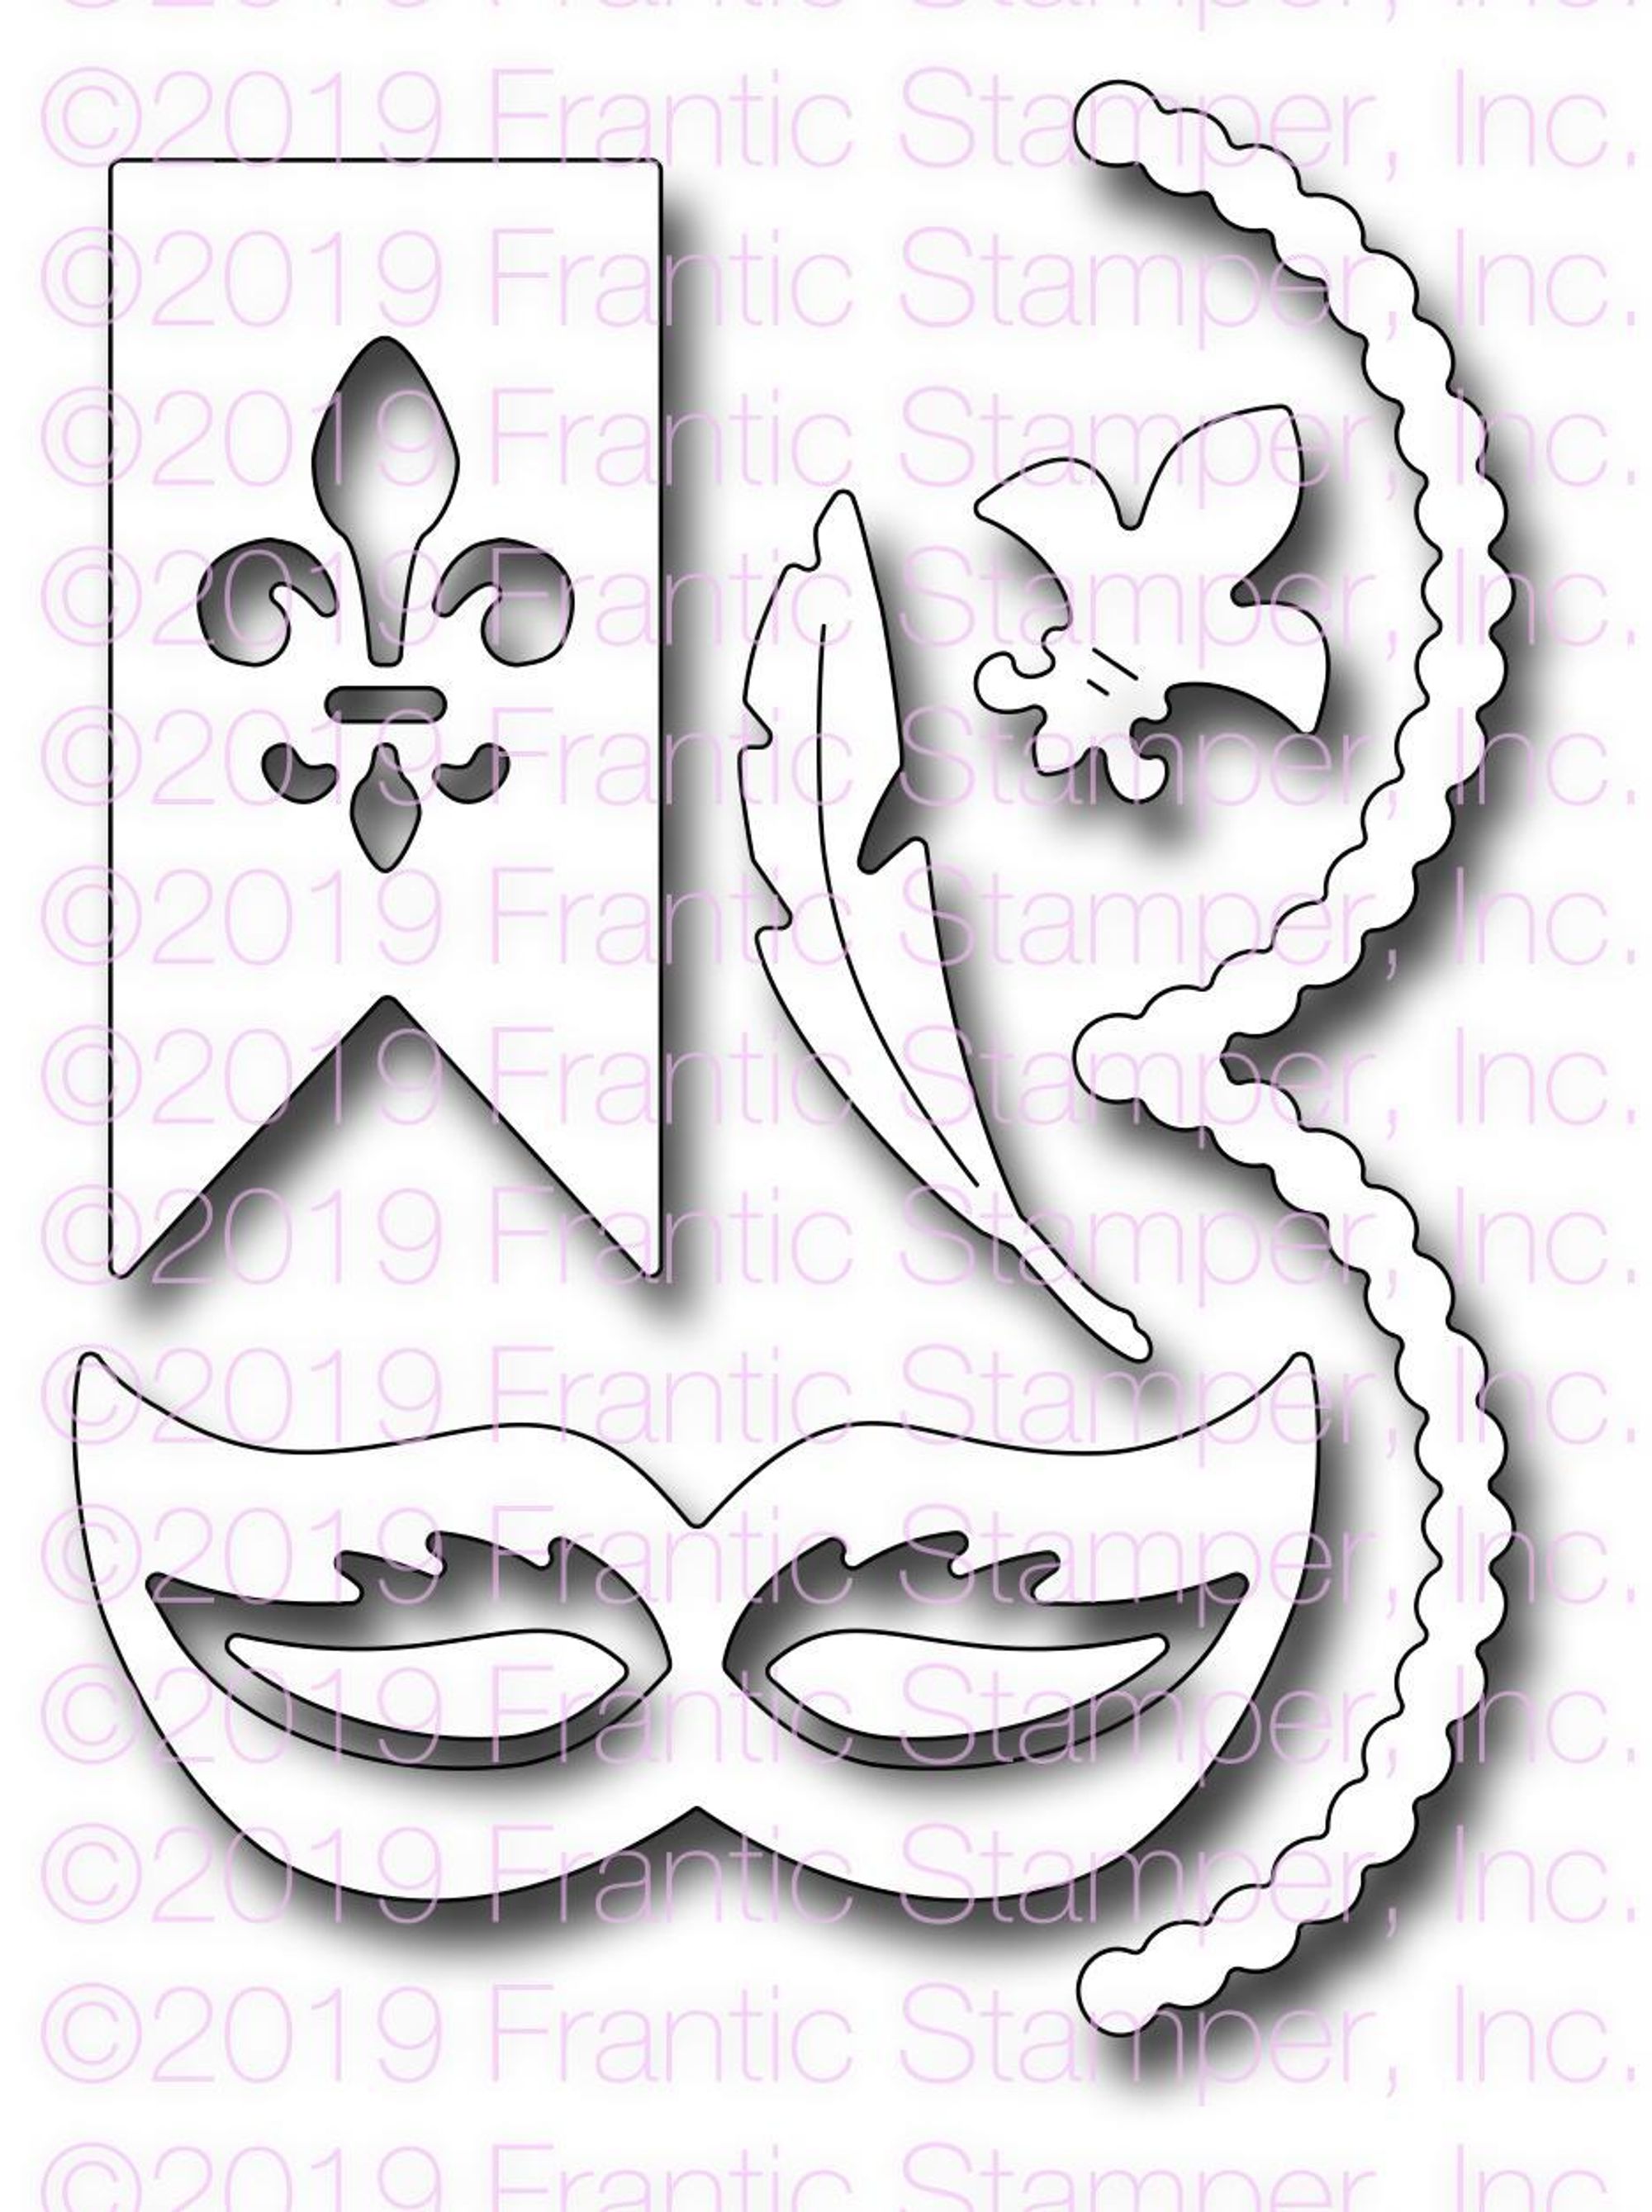 Mardi Gras Mask Beads Sticker, Label, Envelope Seal, Scrapbooking